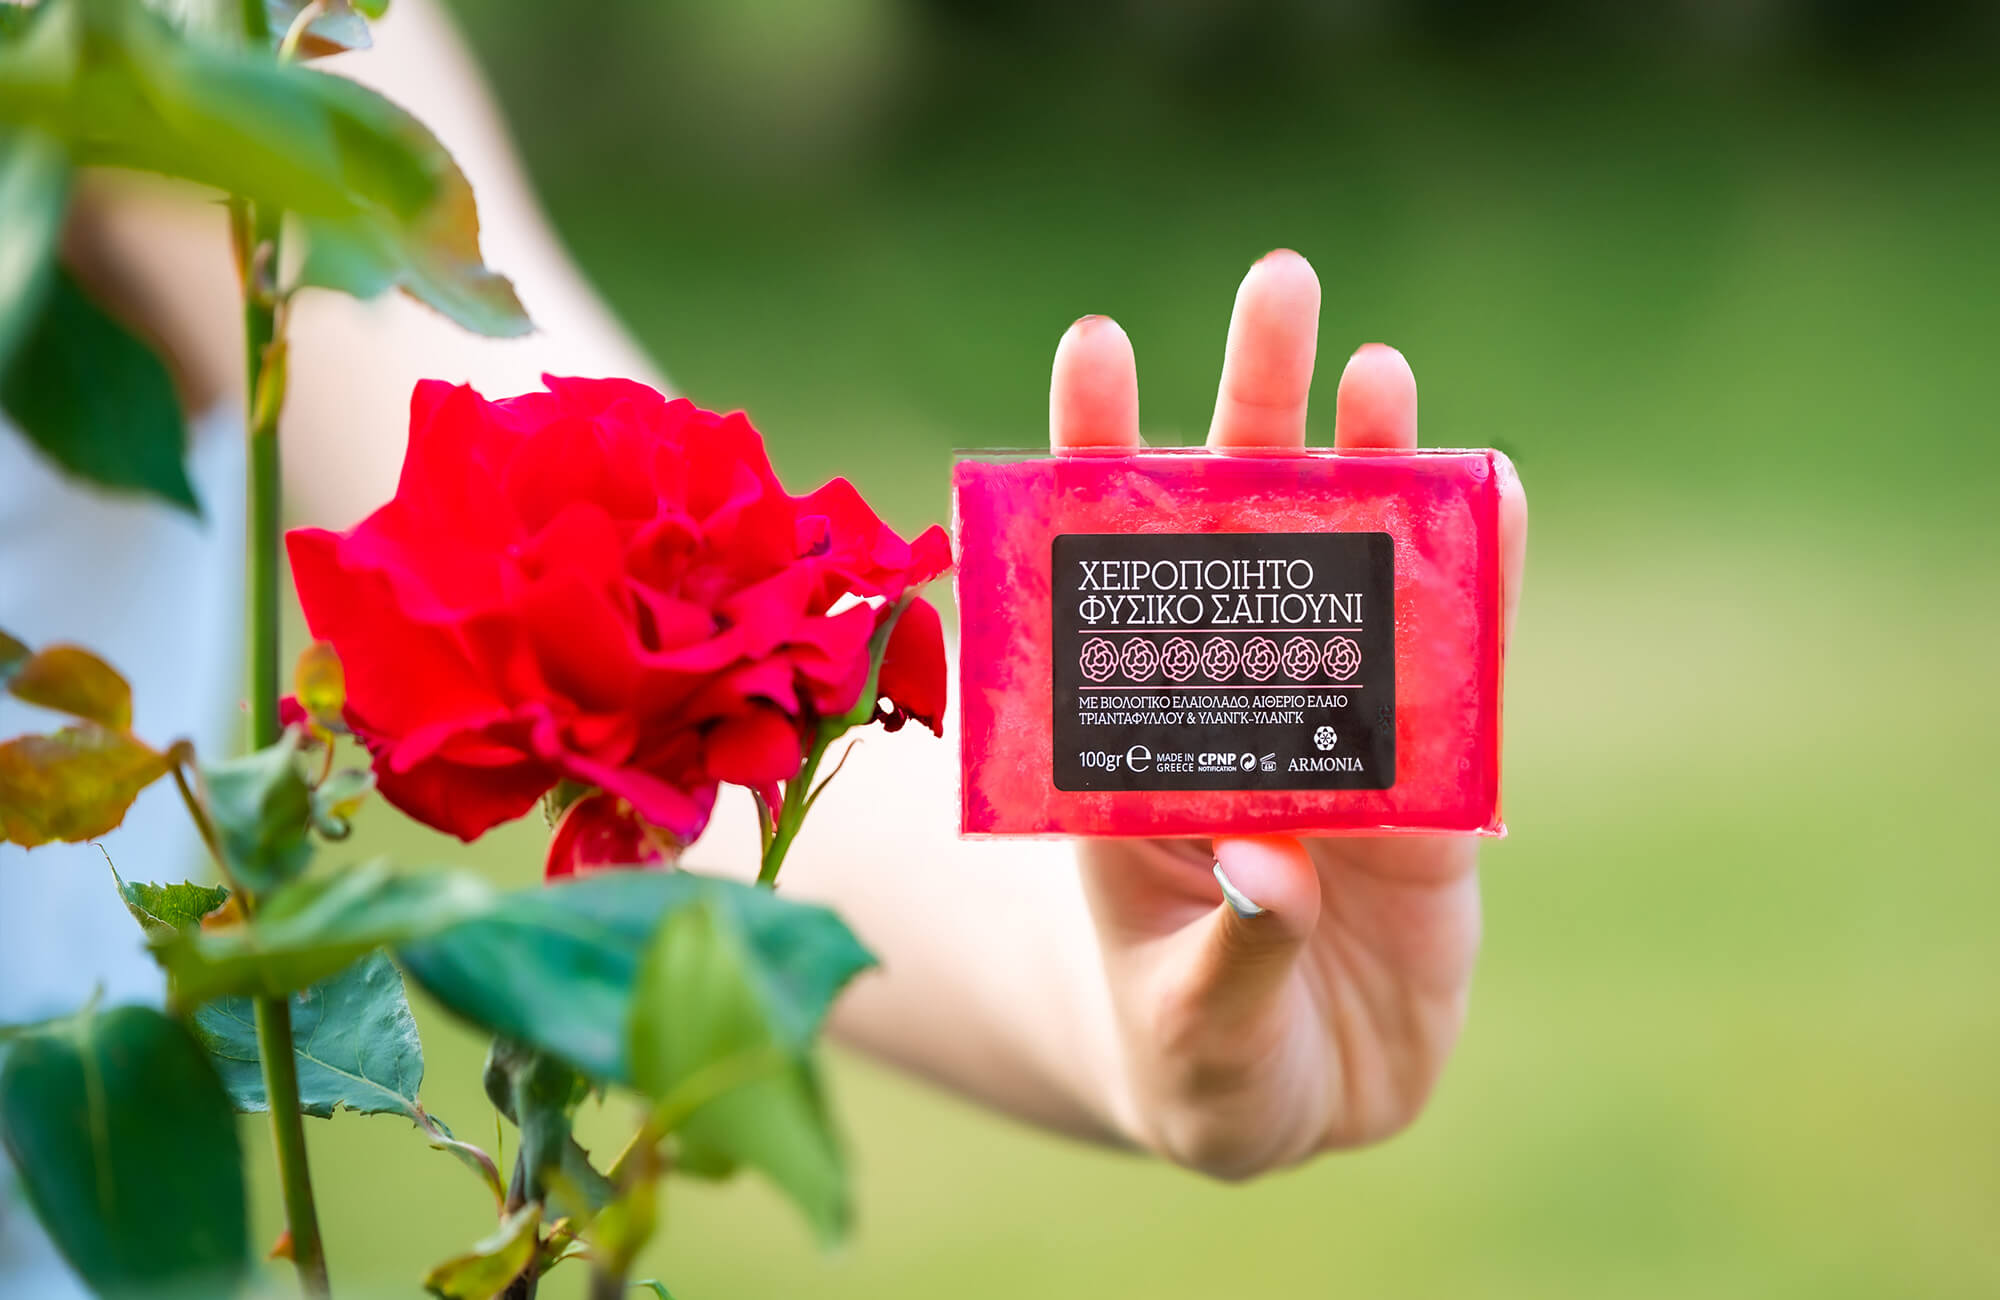 Χειροποίητο σαπούνι Βιολογικό ελαιόλαδο έλαιο τριαντάφυλλου υλανγκ υλανγκ made in greece φυσικά καλλυντικά 100%